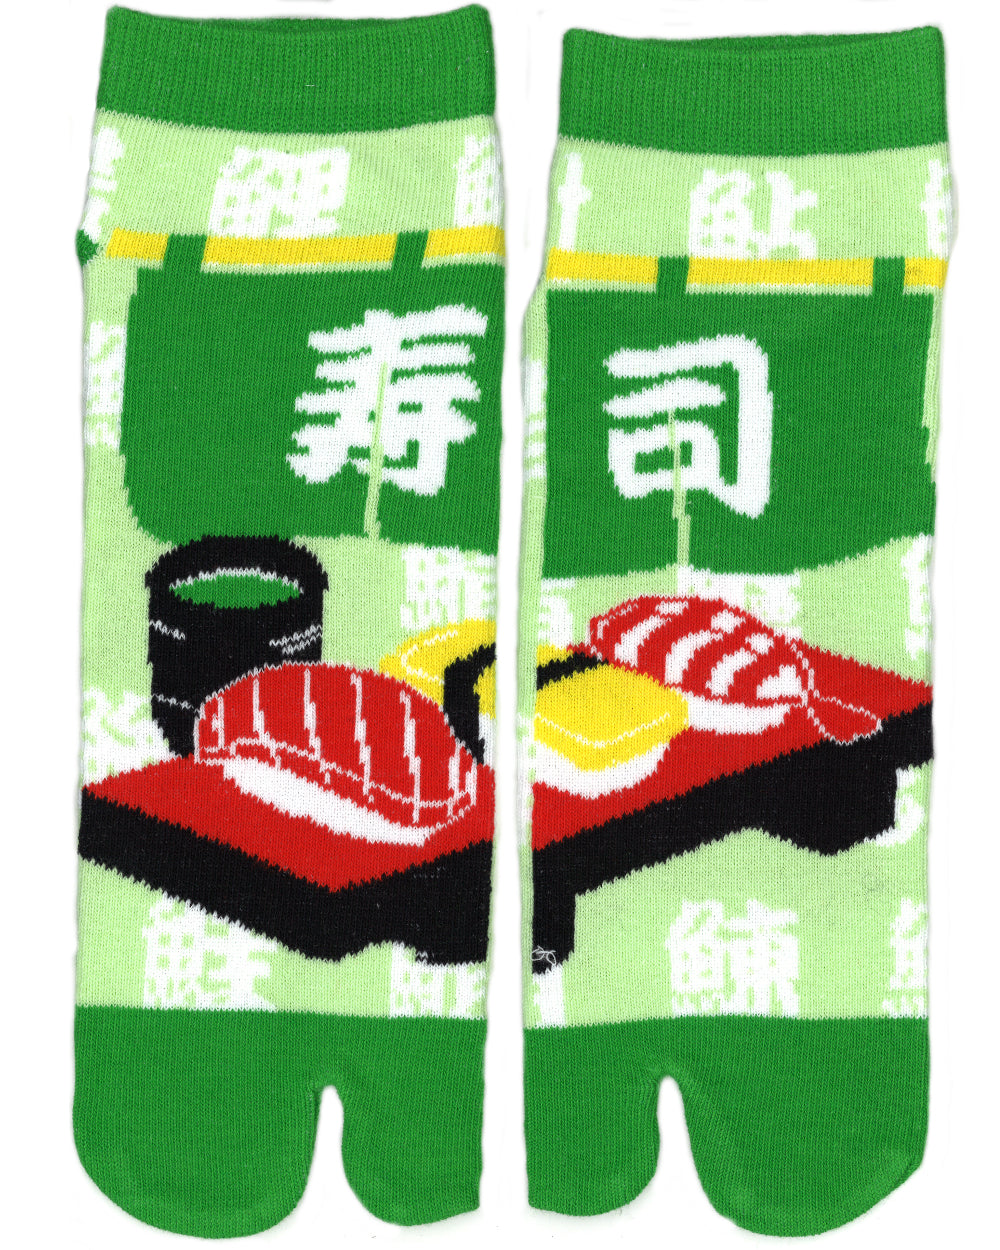 Shinobiya Original Tabi Socks: Sushi